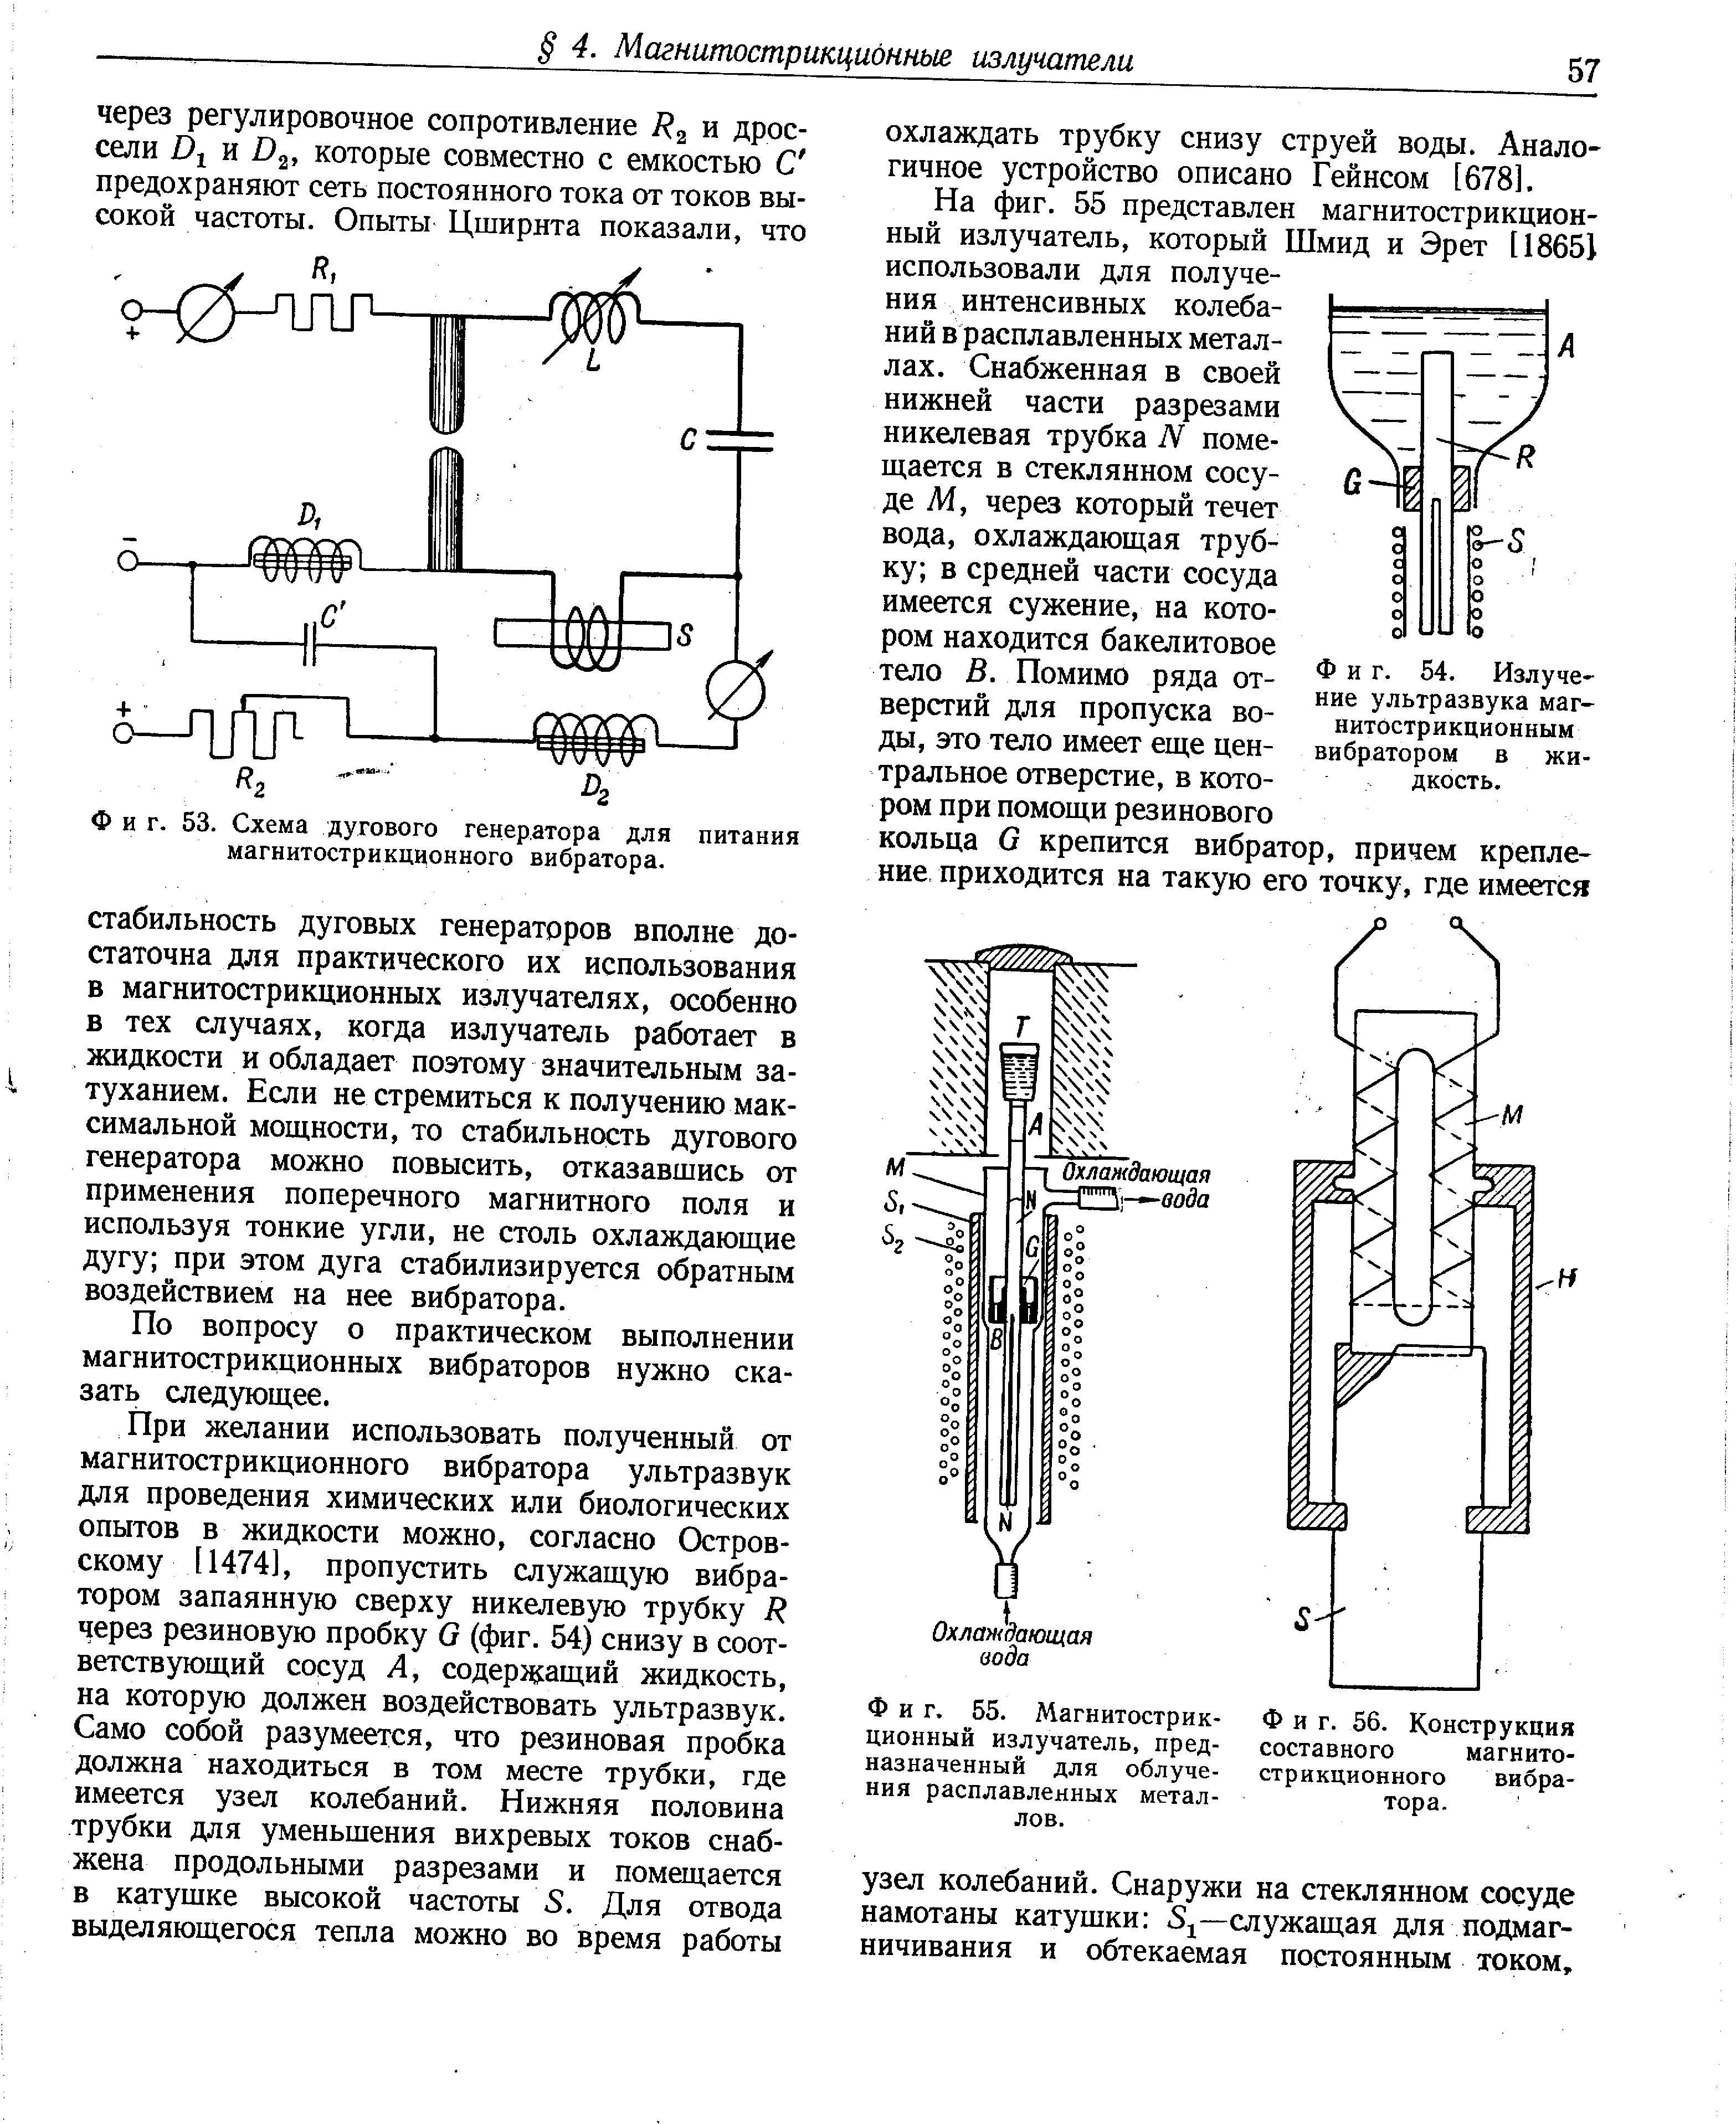 Фиг. 55. Магнитострик- Фиг. 56. Конструкция ционный излучатель, пред- составного магнитоназначенный для облуче- стрикционного вибра-ния расплавленных метал- тора,
